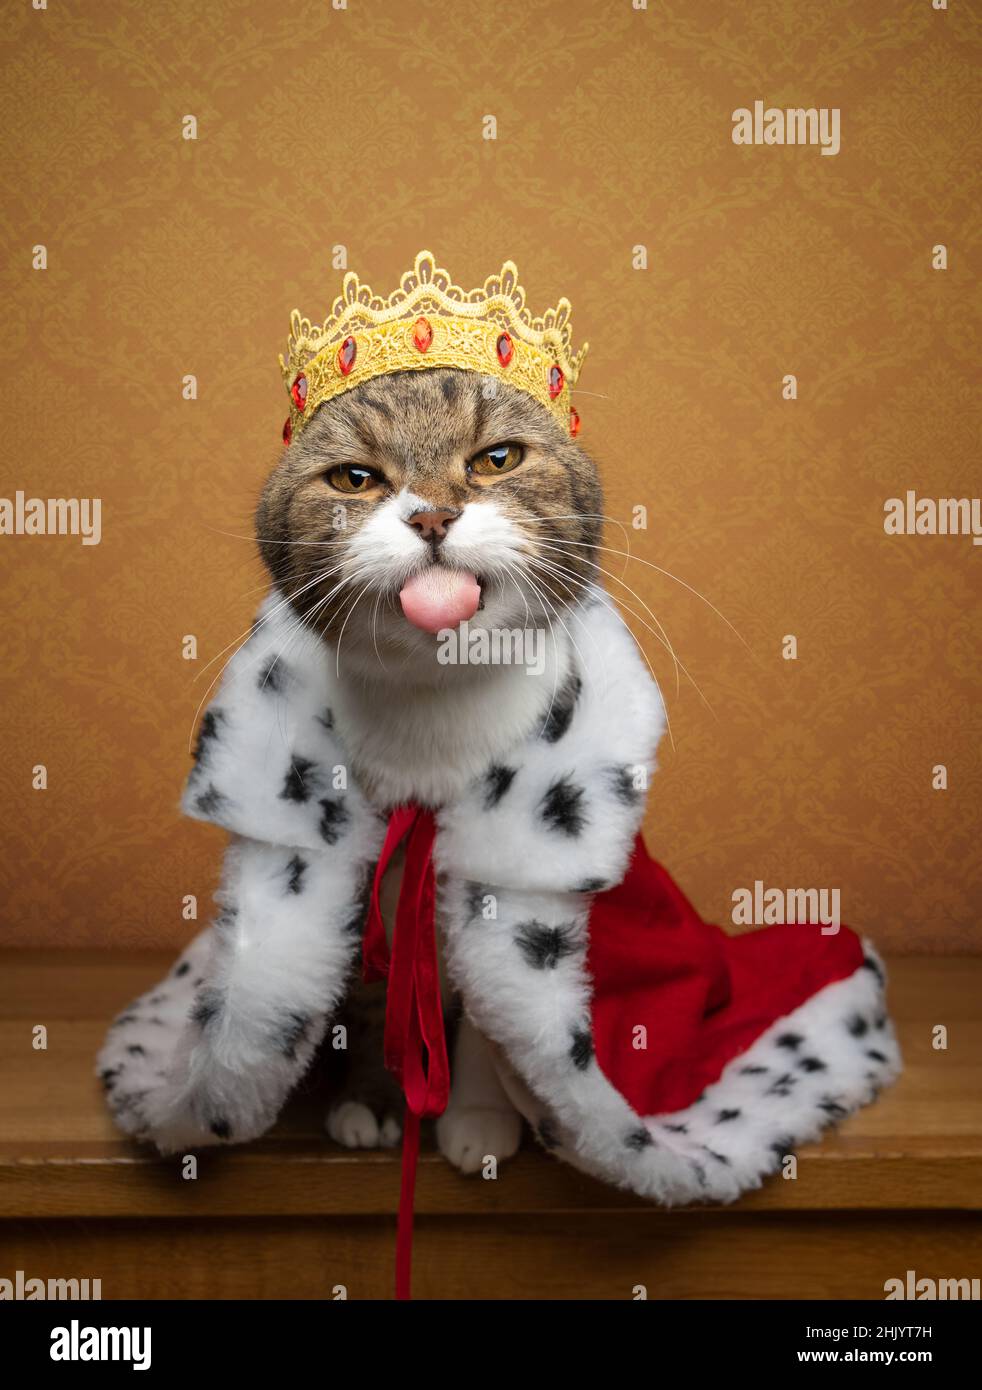 Lustige freche Katze, Kätzchen, wie ragt das die eine Stockfotografie königliches trägt, ein - und ein Zunge der Krone Königstracht aus Alamy